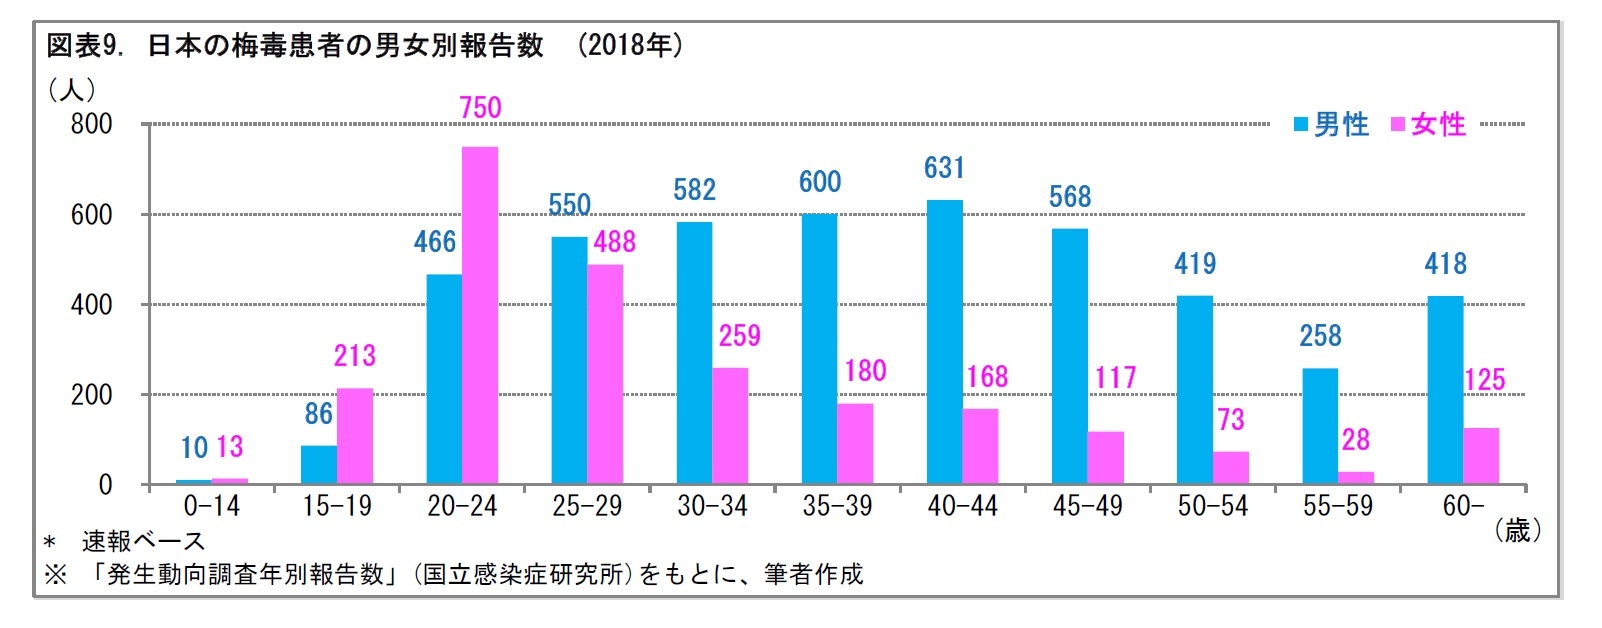 図表9. 日本の梅毒患者の男女別報告数　(2018年)